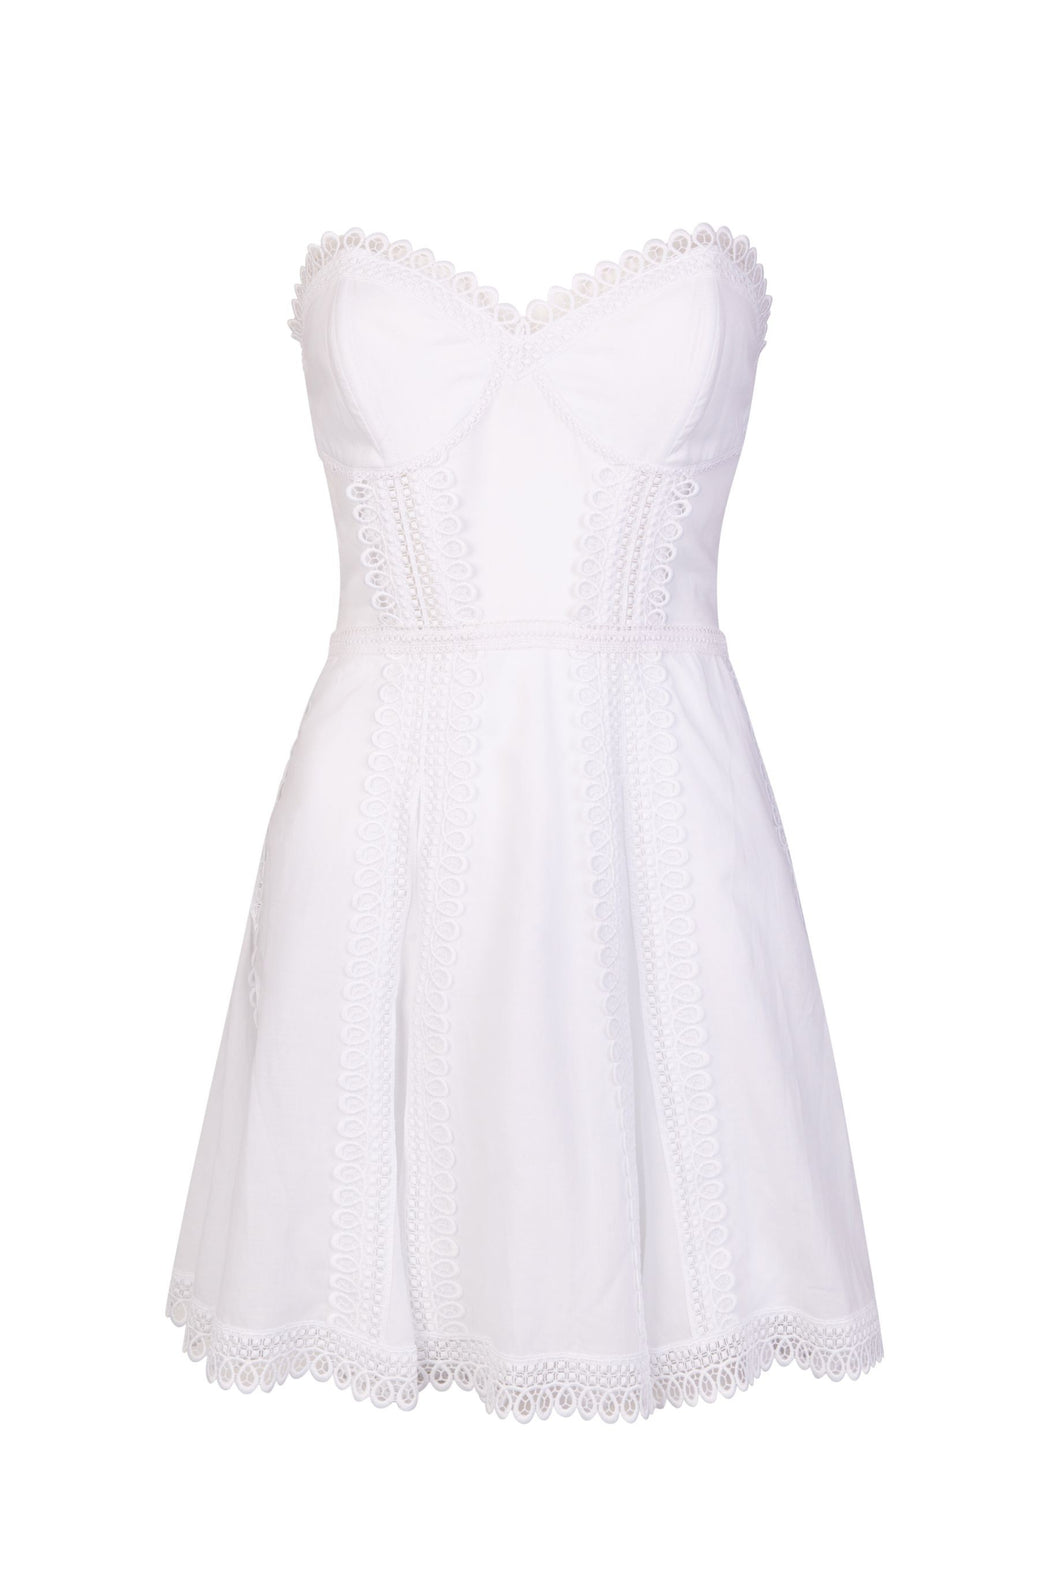 Charo Ruiz Ava Dress - White